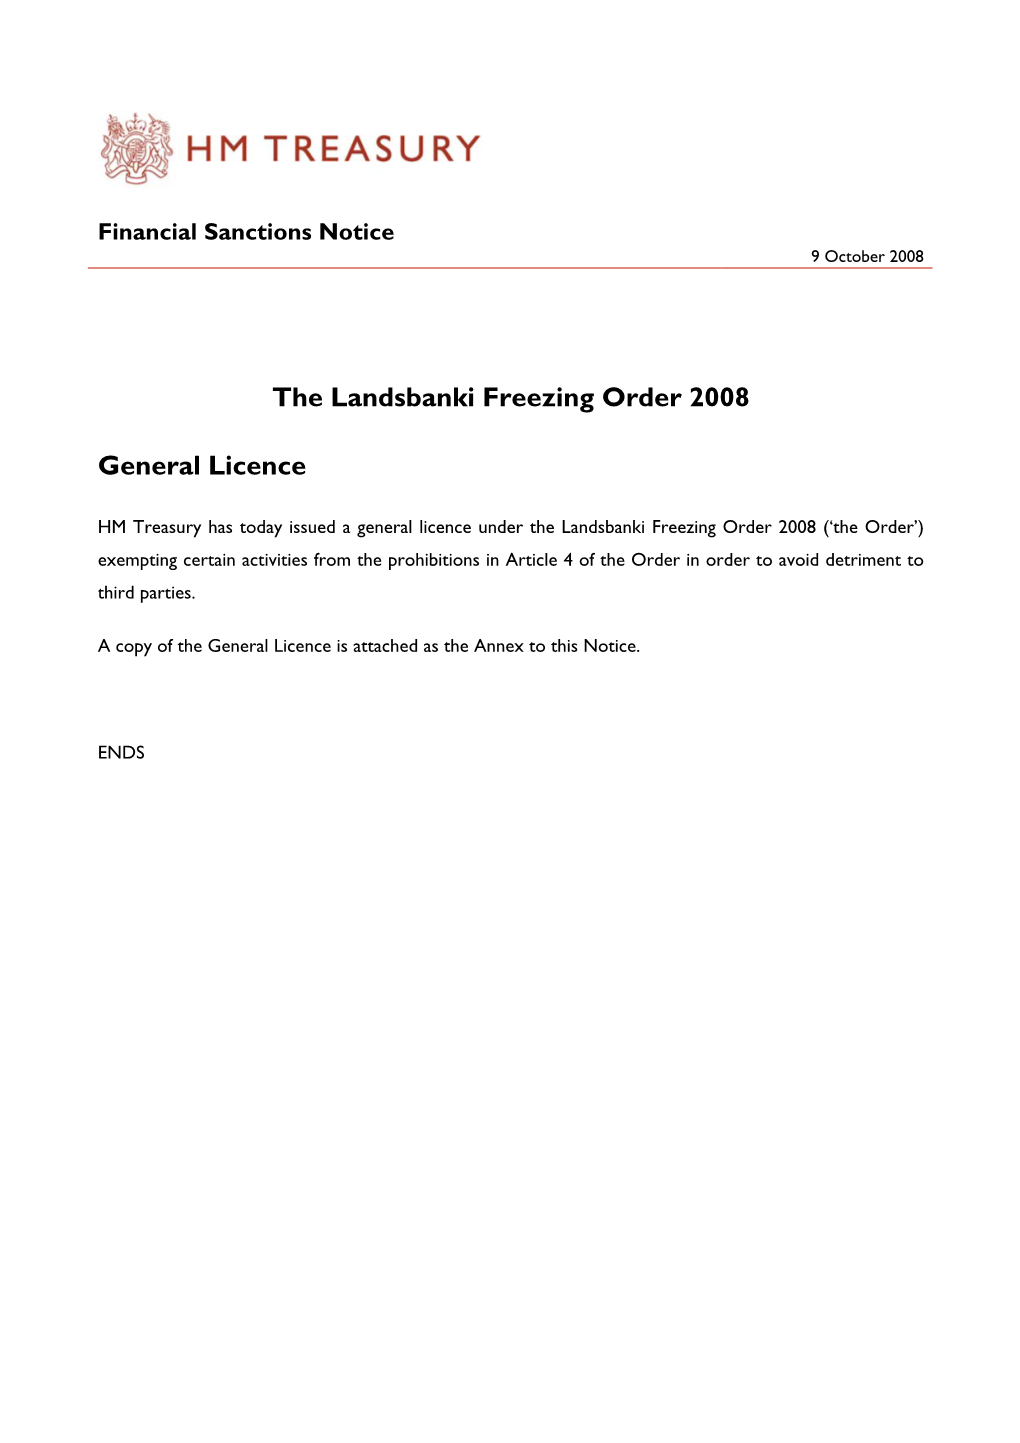 The Landsbanki Freezing Order 2008 General Licence